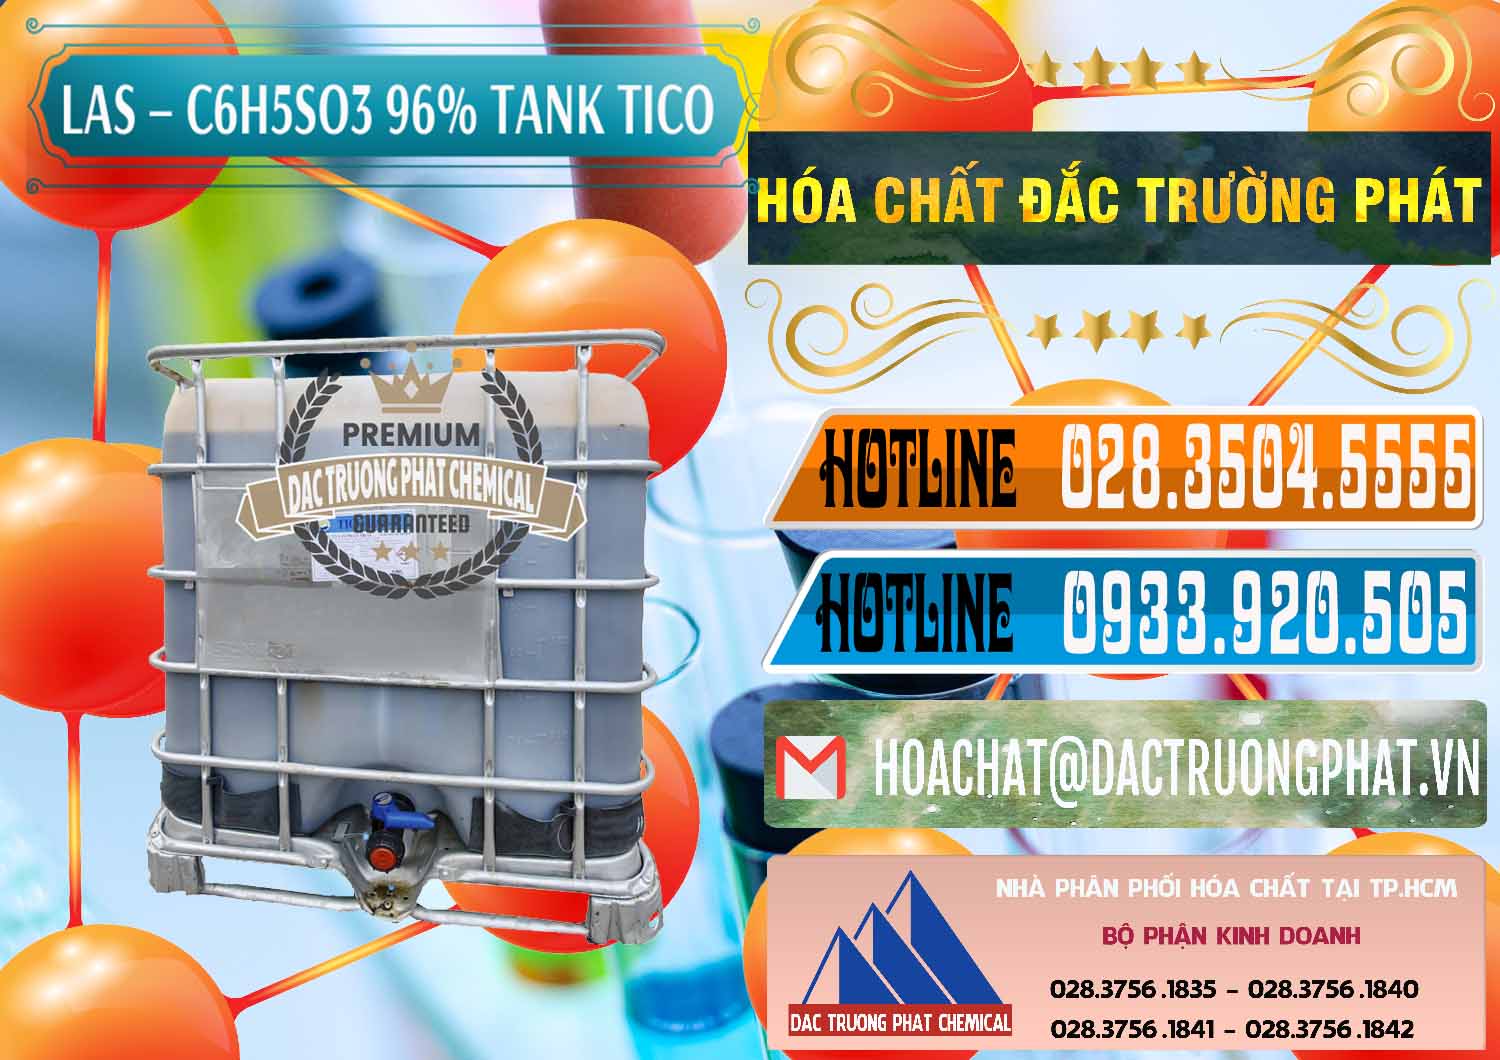 Nơi phân phối - bán Chất tạo bọt Las P Tico Tank IBC Bồn Việt Nam - 0488 - Cty nhập khẩu & cung cấp hóa chất tại TP.HCM - stmp.net